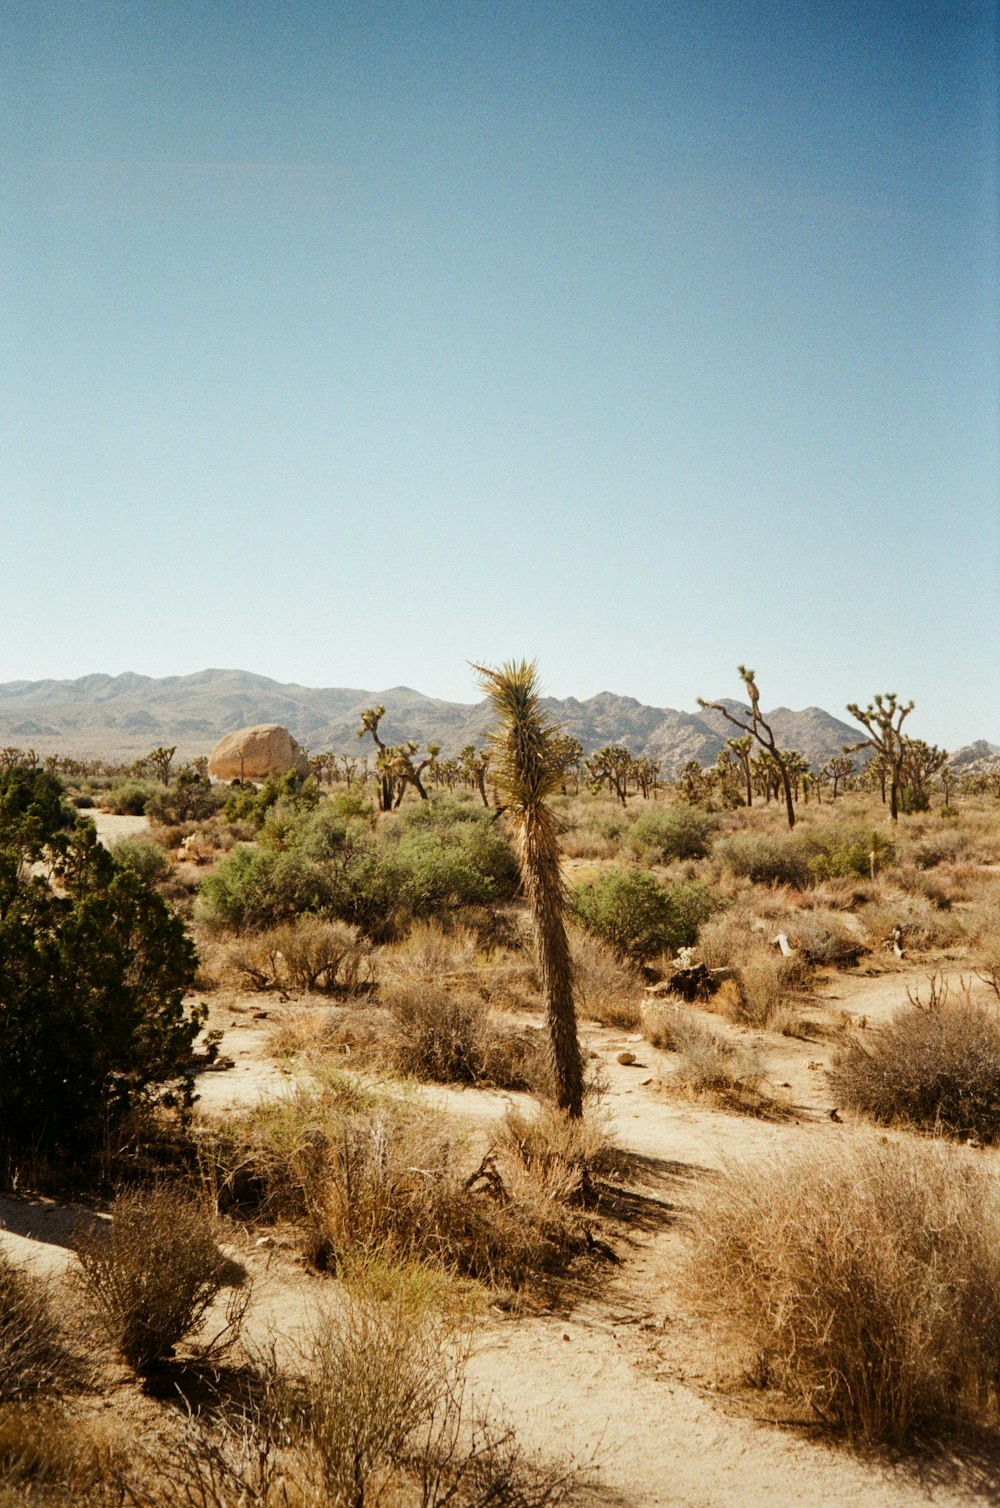 배경에 몇 그루의 나무와 산이 있는 사막 풍경